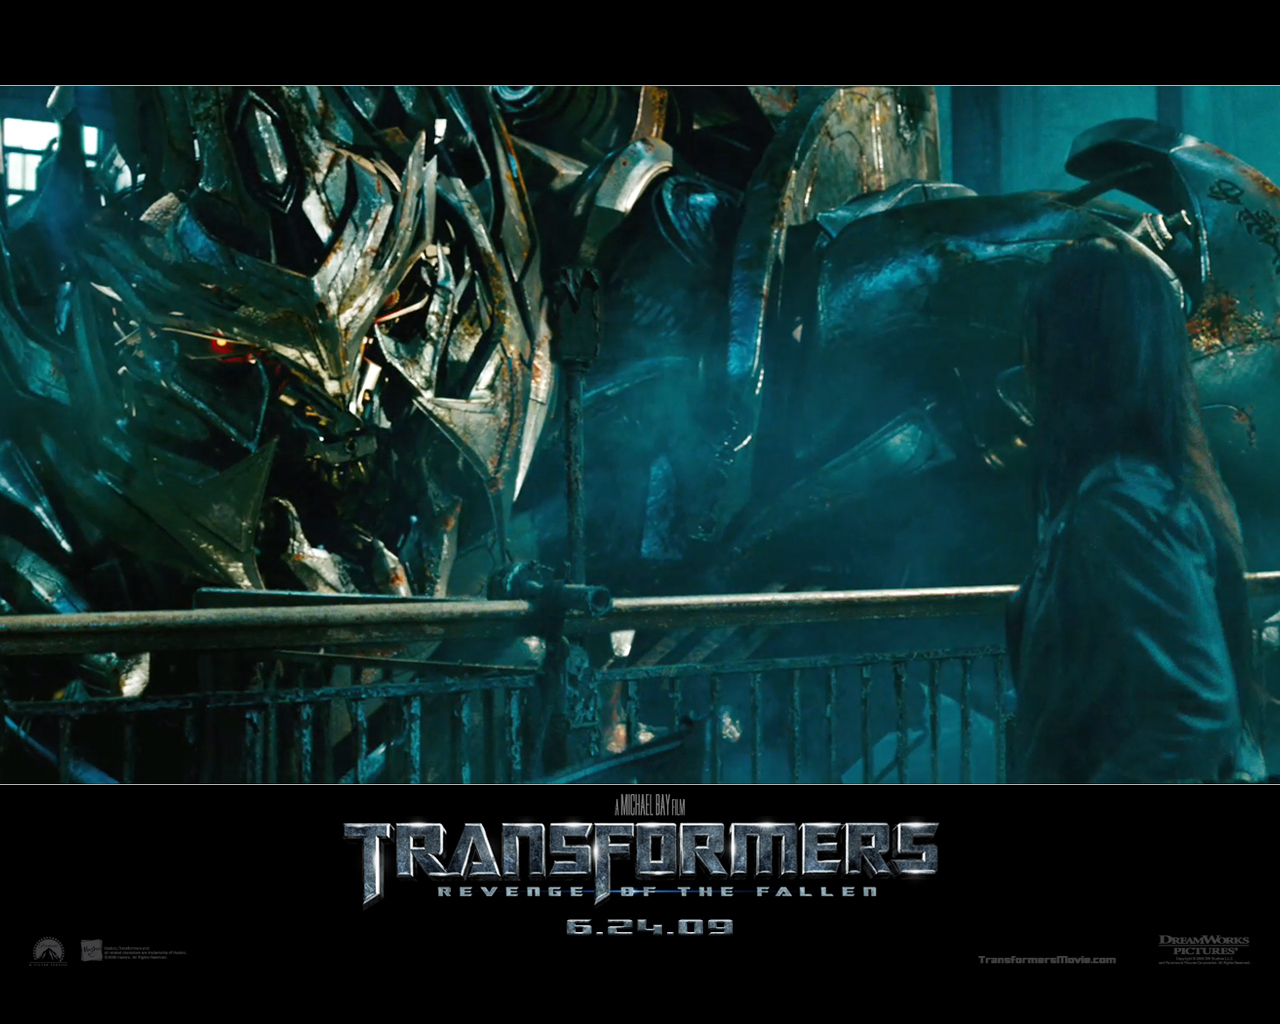 "Transformers: Revenge of the Fallen" desktop wallpaper number 2 (1280 x 1024 pixels)